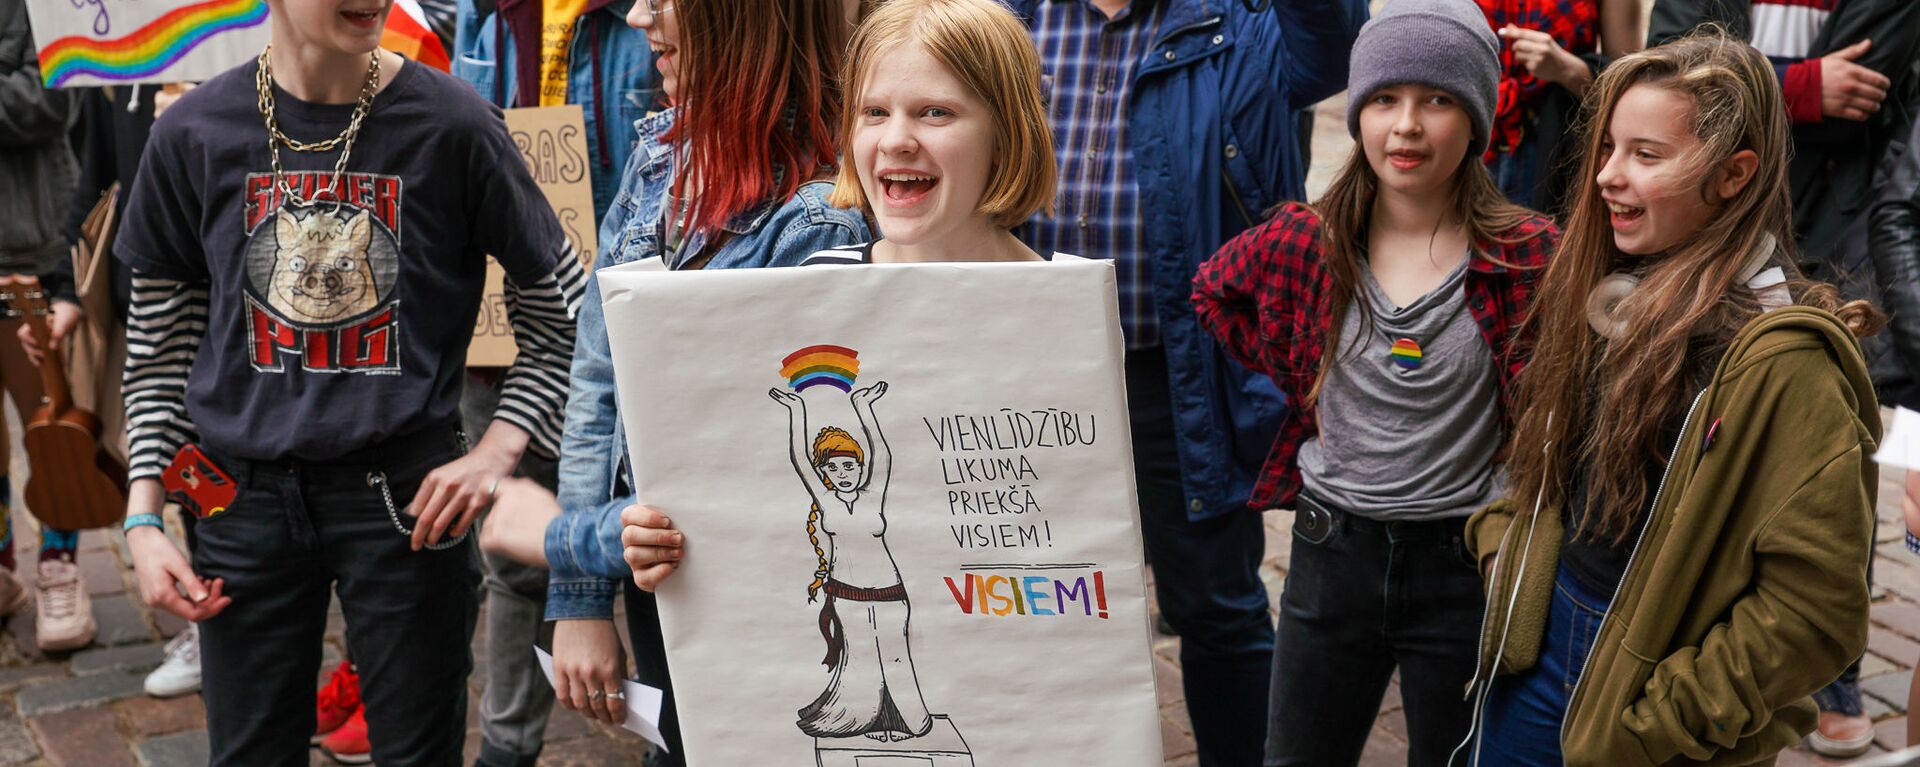  Пикет молодежной организации Протест за права представителей ЛГБТ - Sputnik Латвия, 1920, 18.05.2019